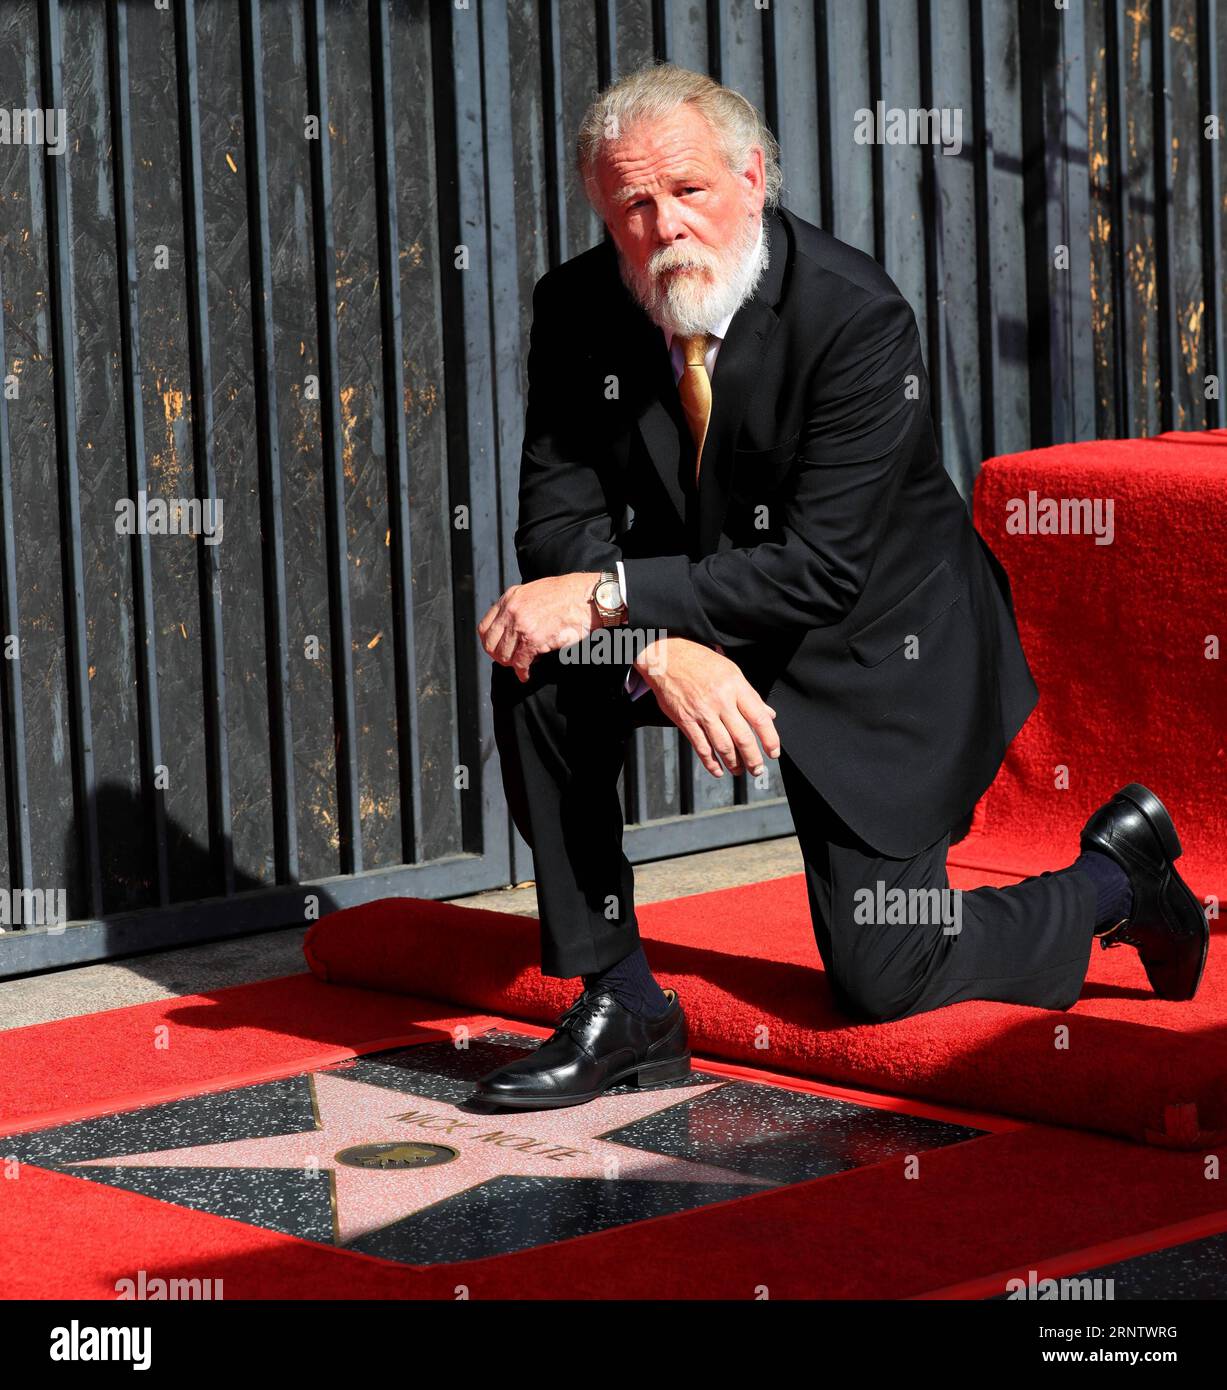 171121 -- LOS ANGELES, le 21 novembre 2017 -- l'acteur Nick Nolte pose pour des photos avec son étoile lors de sa cérémonie d'honneur des étoiles sur le Hollywood Walk of Fame à Los Angeles, aux États-Unis, le 20 novembre 2017. Nick Nolte a reçu une étoile sur le Hollywood Walk of Fame lundi. YY U.S.-LOS ANGELES-HOLLYWOOD-NICK NOLTE LixYing PUBLICATIONxNOTxINxCHN Banque D'Images